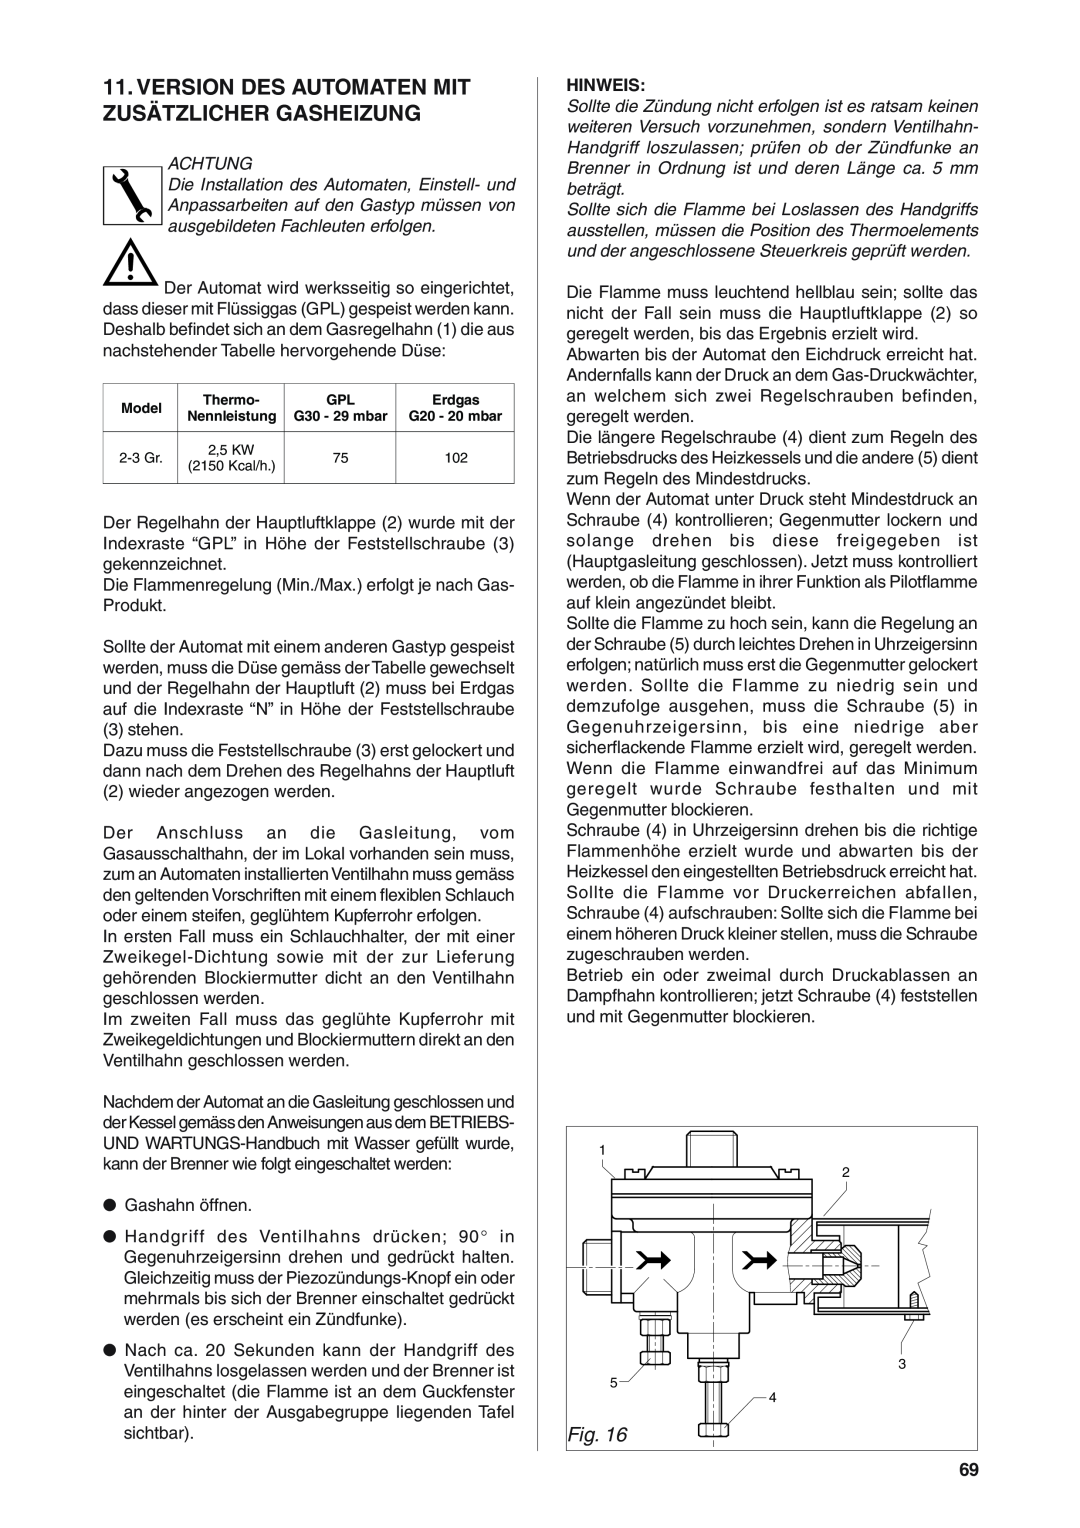 Rancilio S20 manual Version Des Automaten Mit Zusätzlicher Gasheizung, Hinweis 